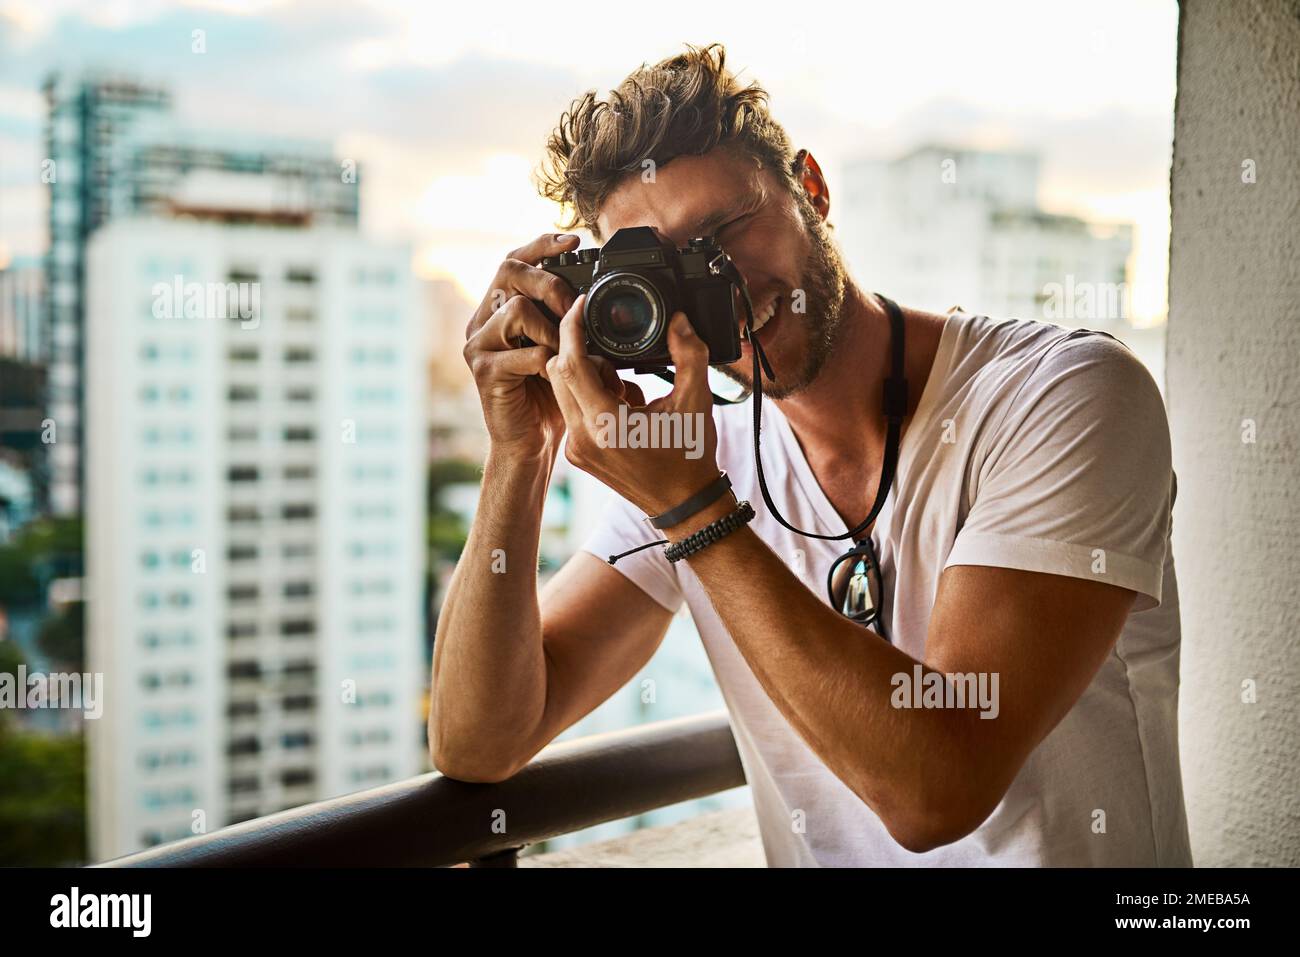 Changez votre façon de regarder les choses. un jeune homme qui prend des photos de la ville avec un appareil photo à l'extérieur. Banque D'Images